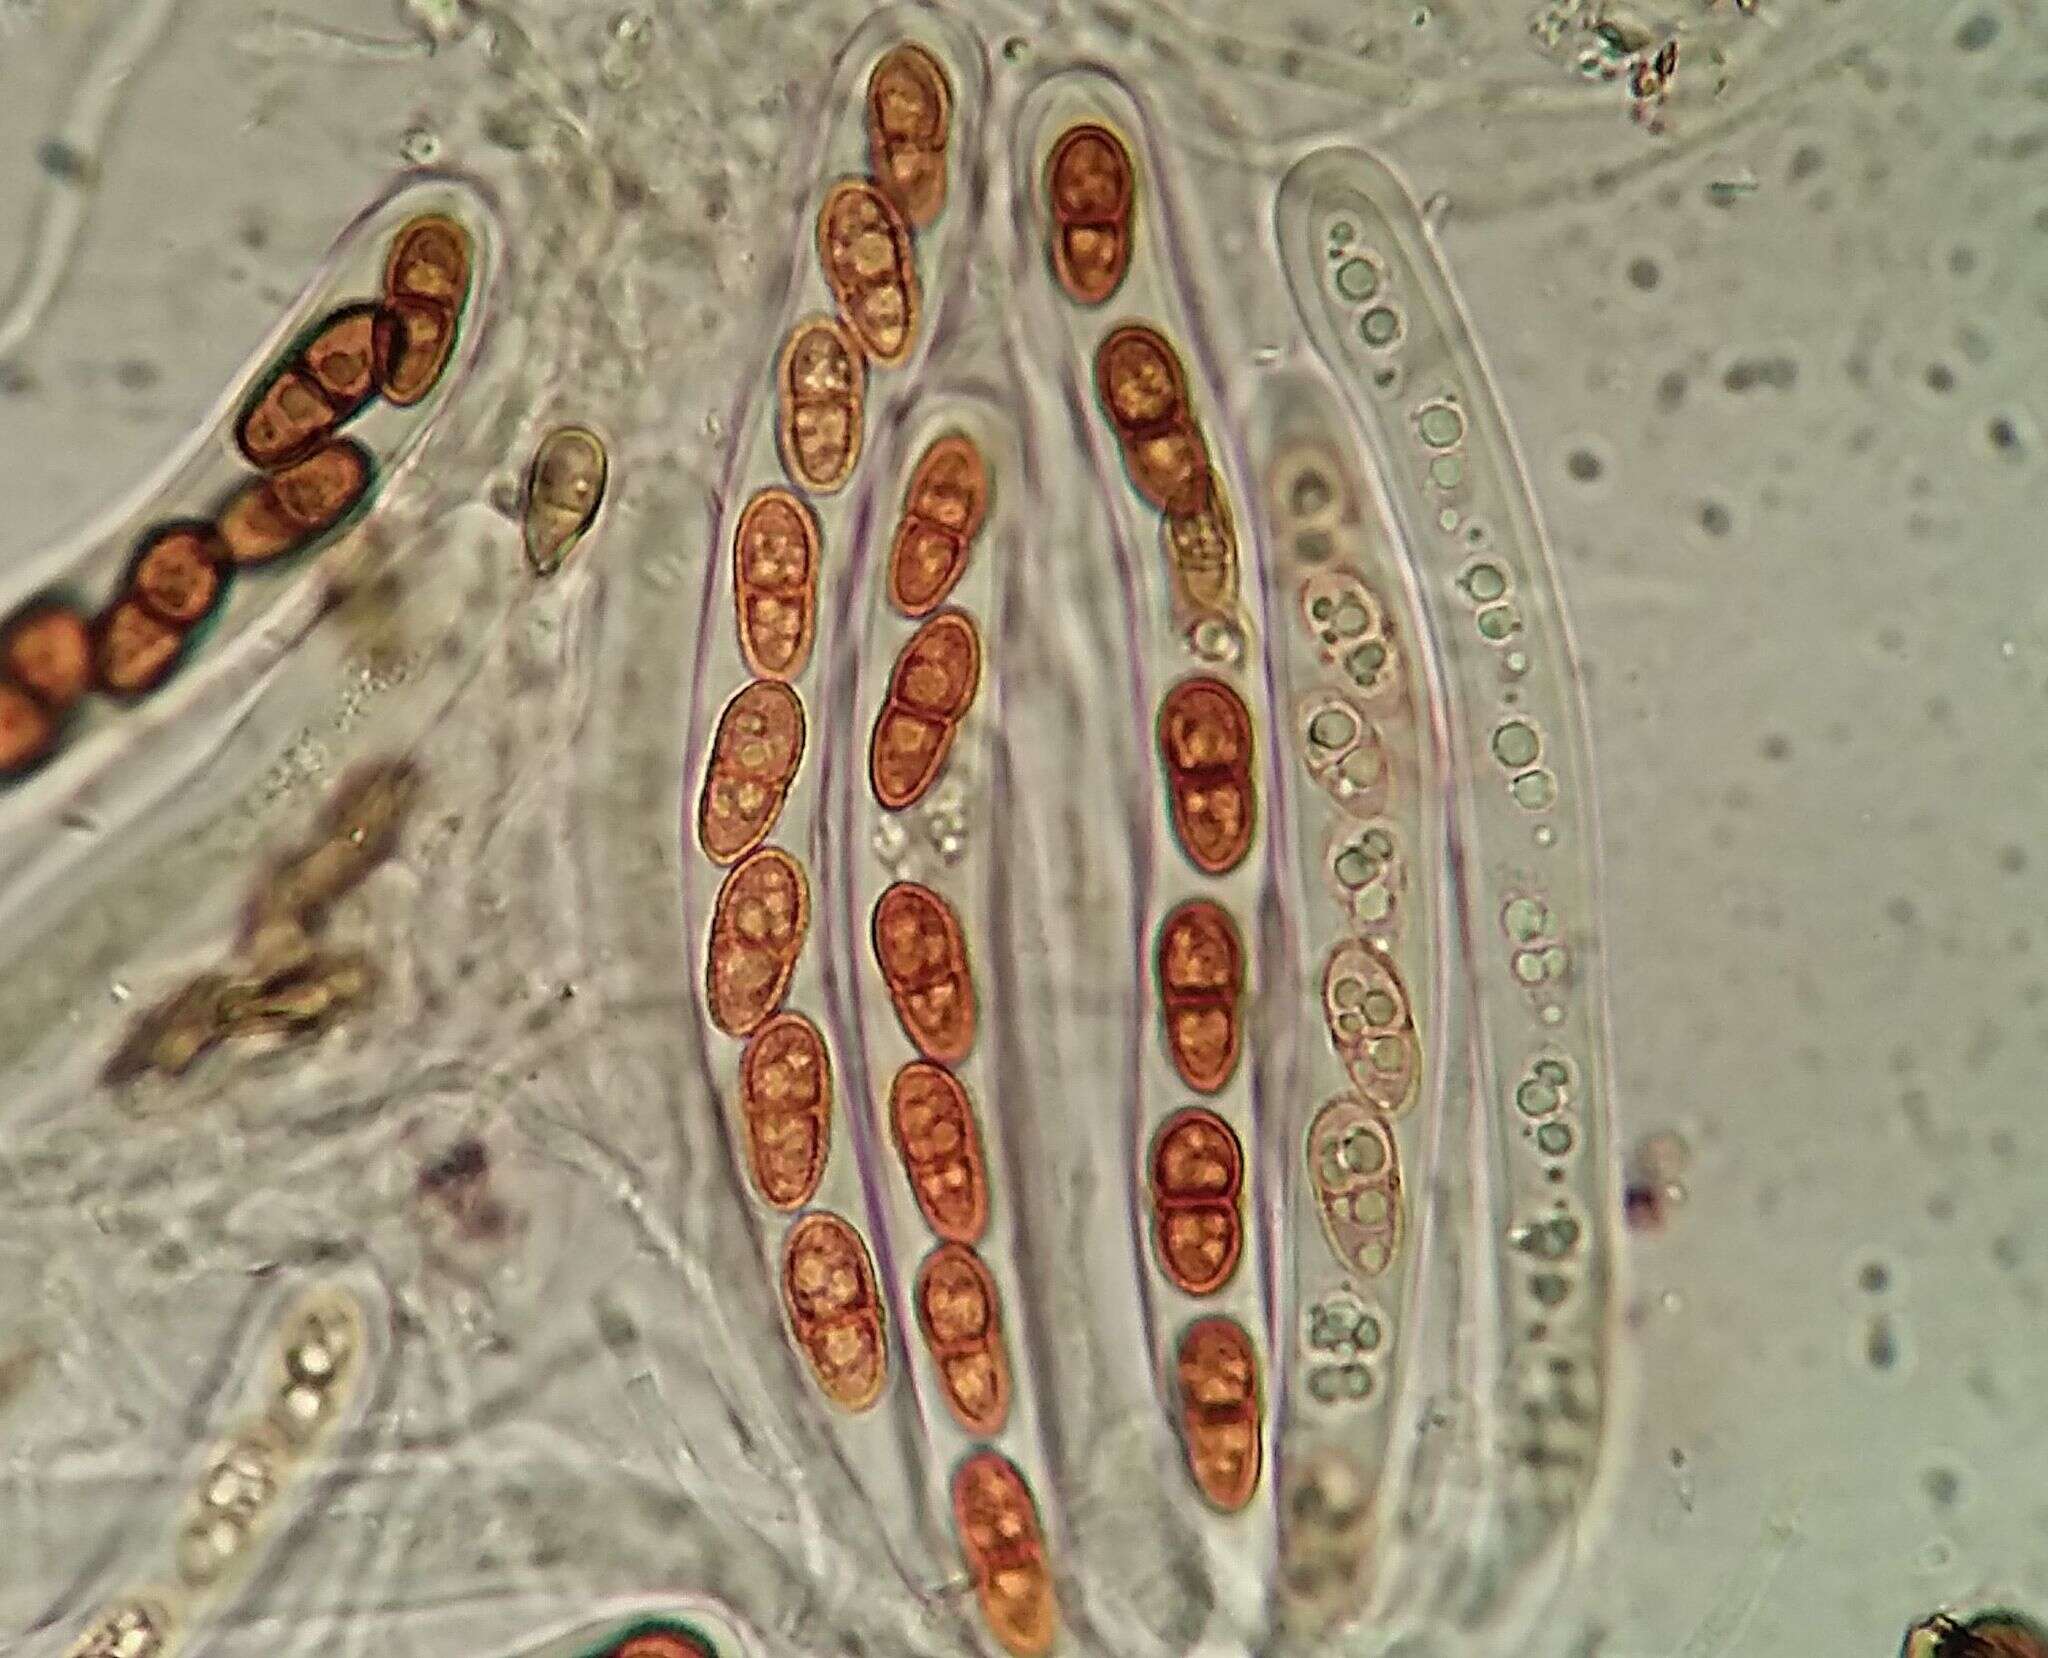 Image of Polycoccum slaptonense